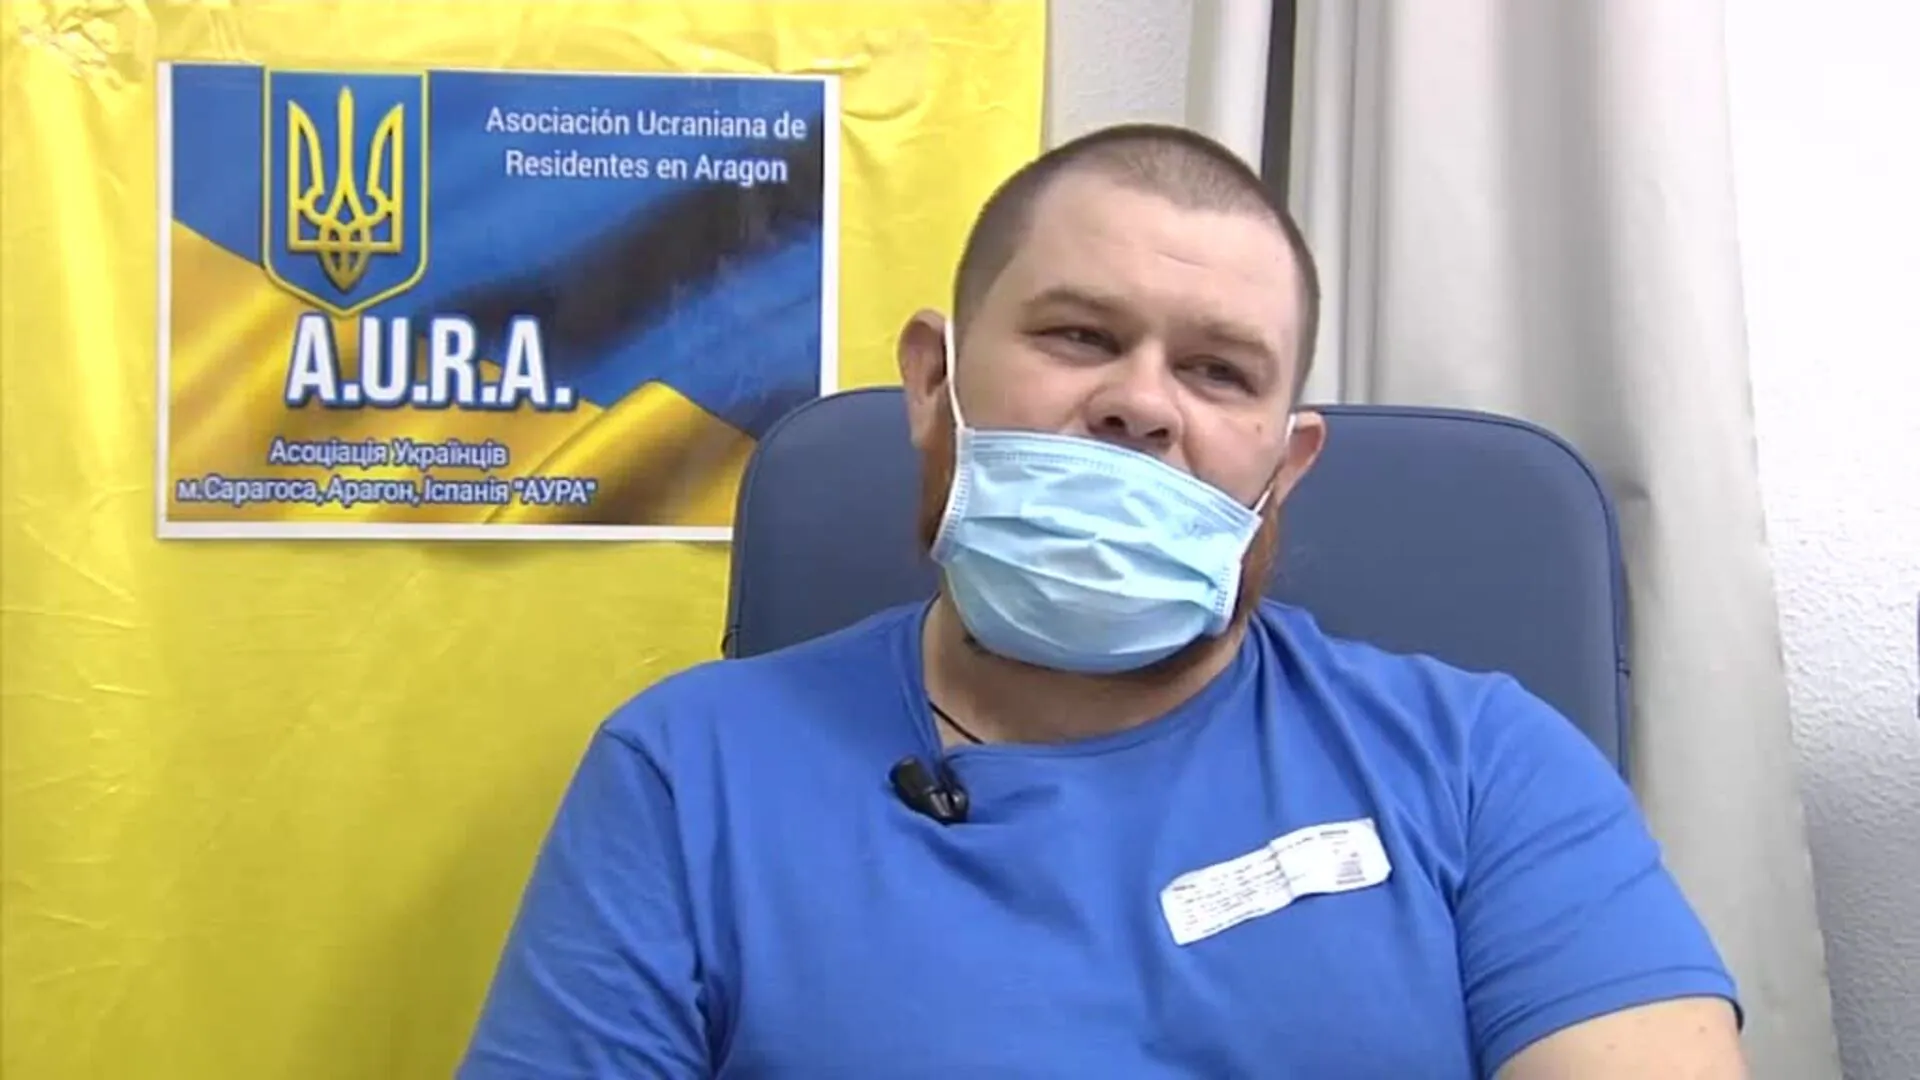 Militares ucranianos se recuperan en España de sus heridas físicas y emocionales